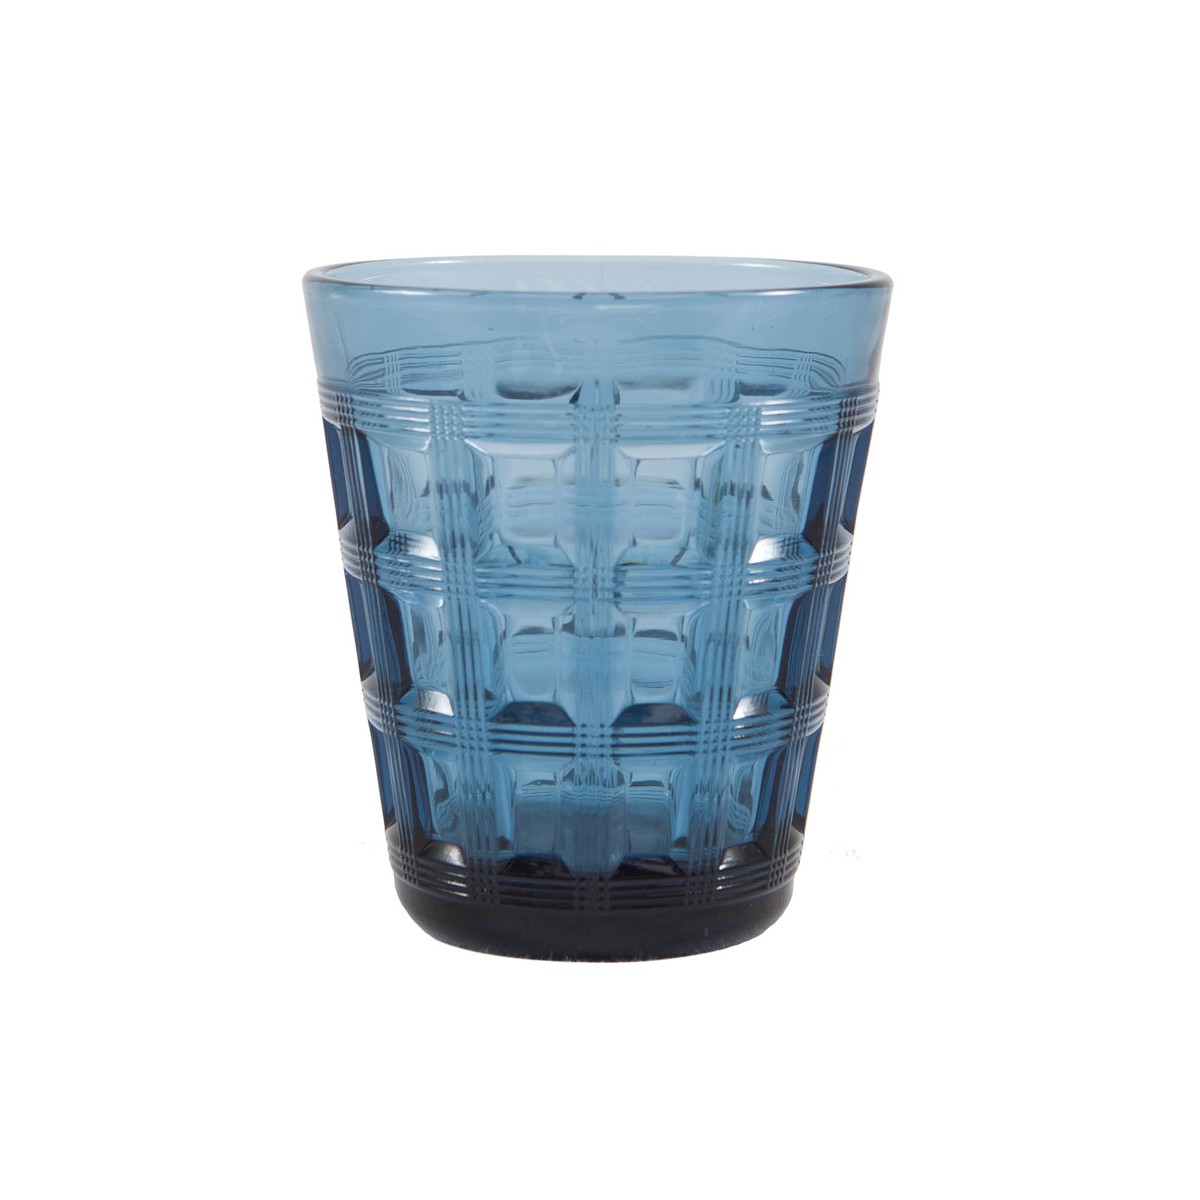   Verre à eau Carreaux Bleu cobalt 8.8x6x10.1cm